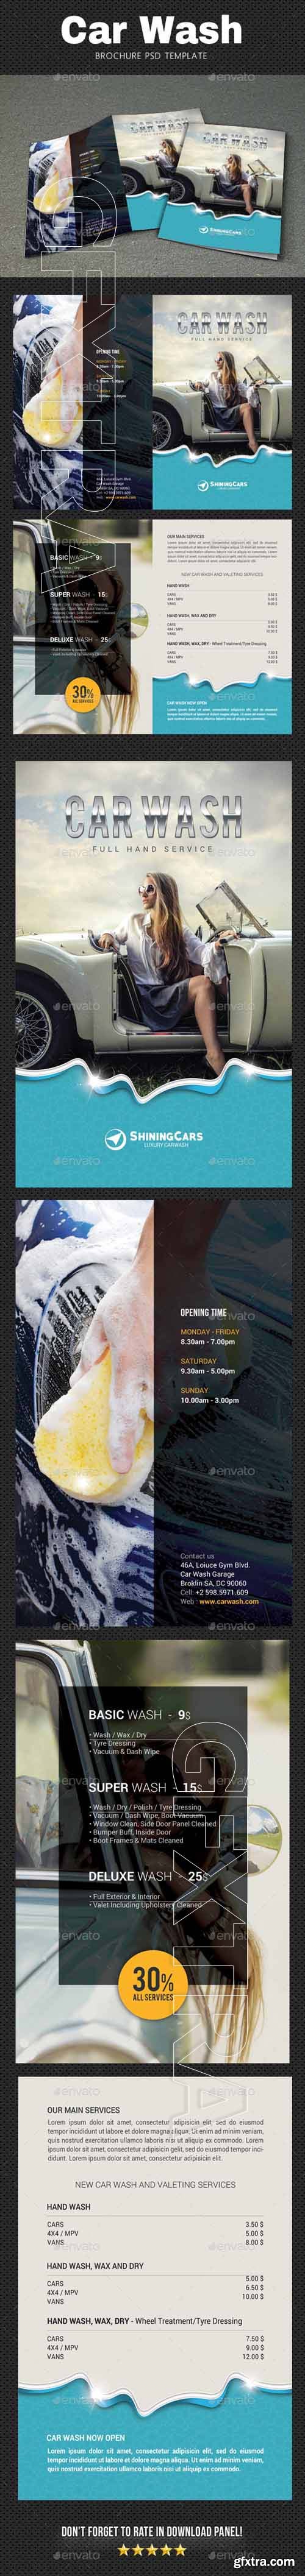 GraphicRiver - Car Wash Brochure 20656073